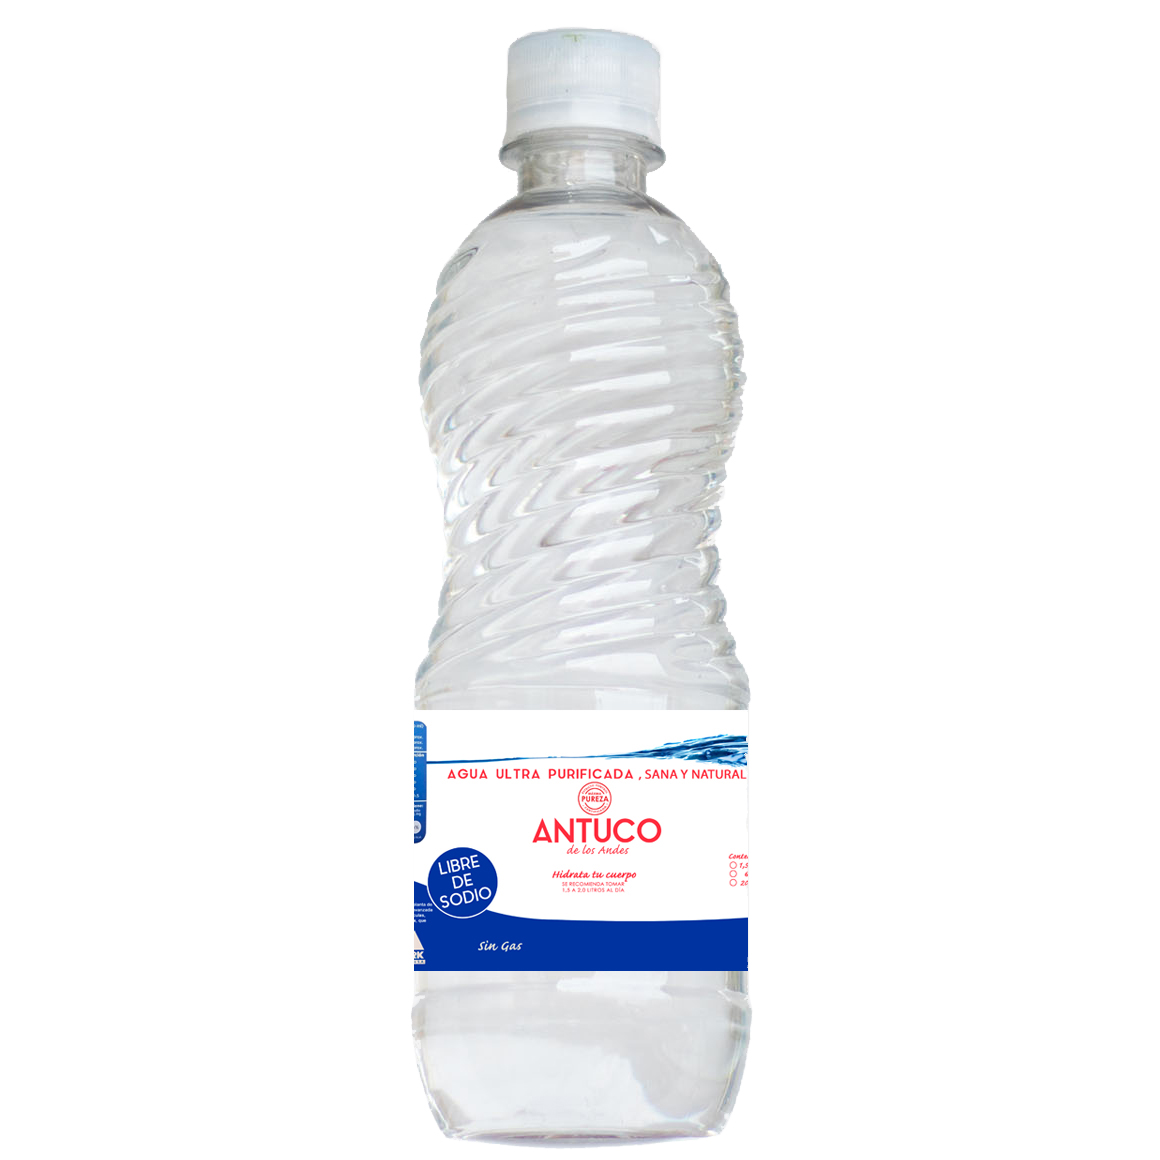 Botella de Agua 500 ml